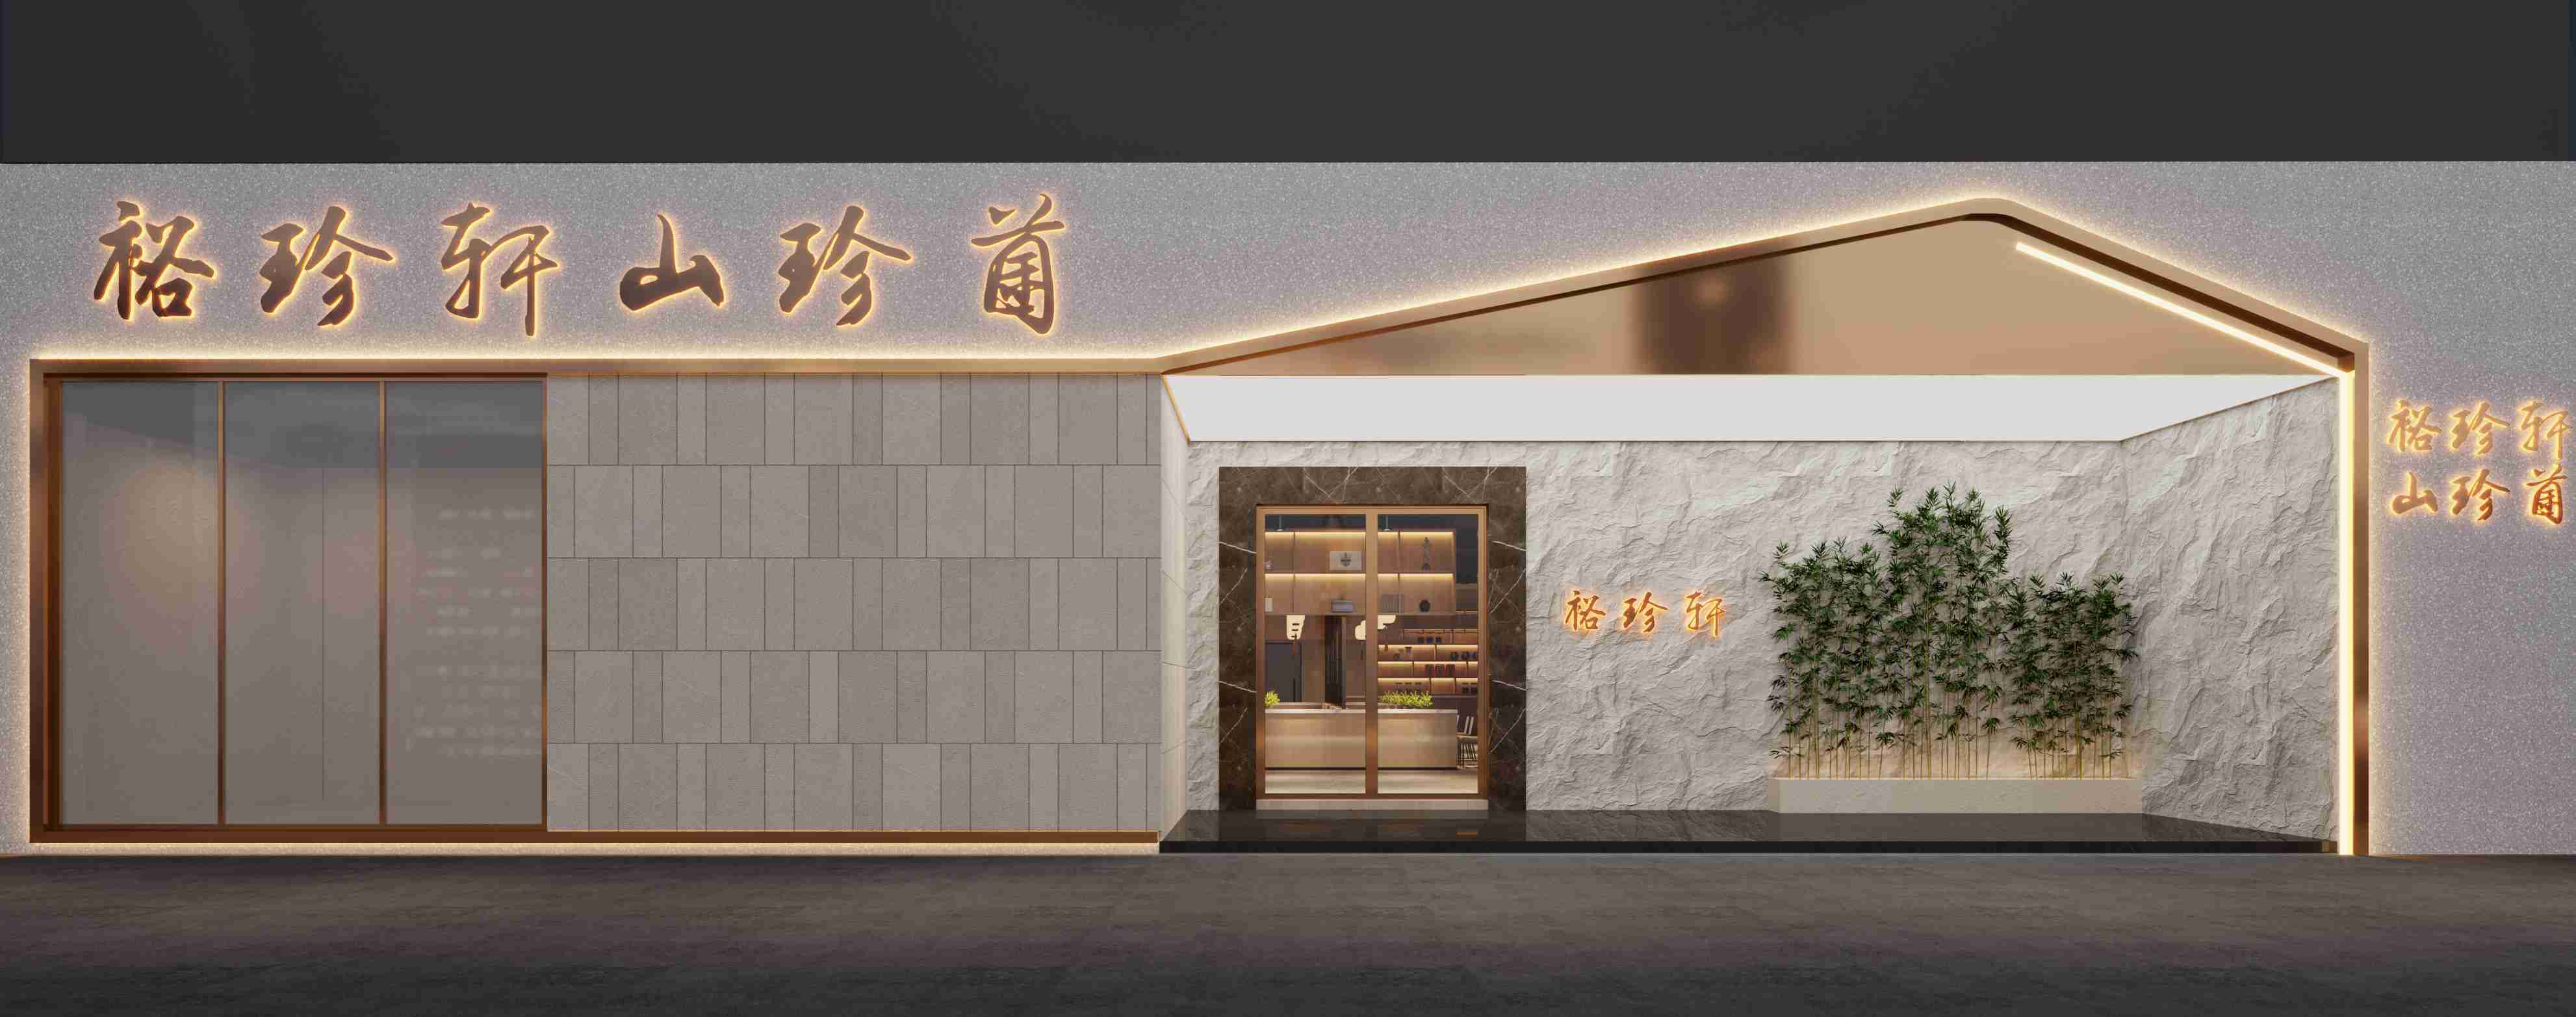 专业的广州餐饮设计公司